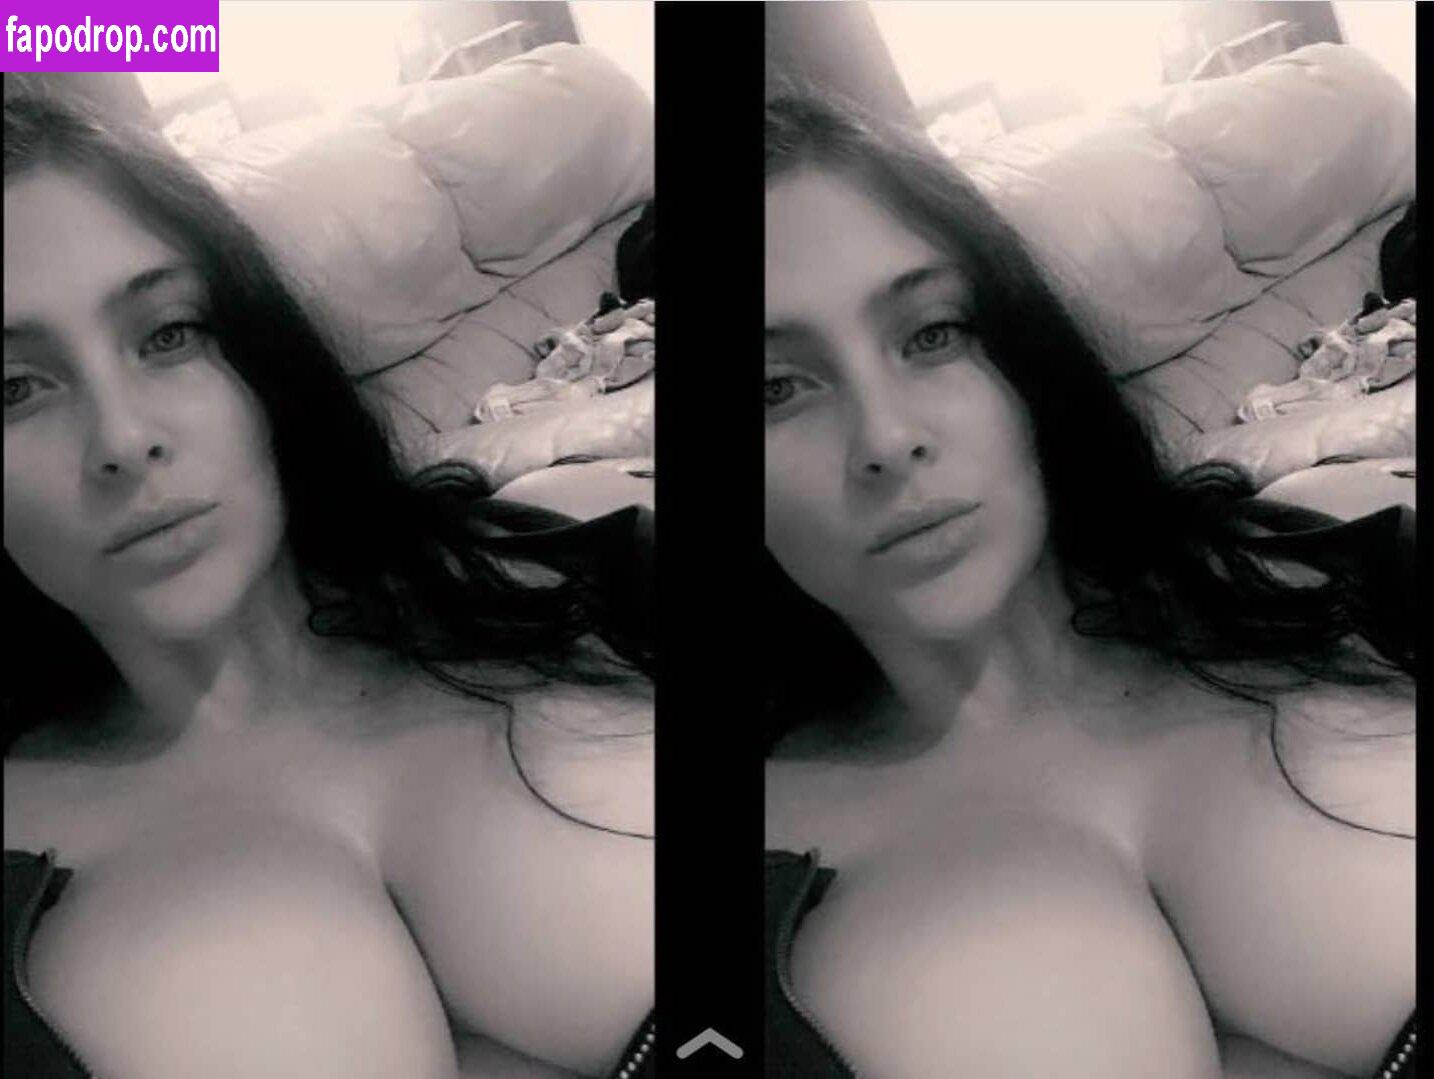 Lauren Modra / littlemissloz / lmisslozpriv leak of nude photo #0218 from OnlyFans or Patreon